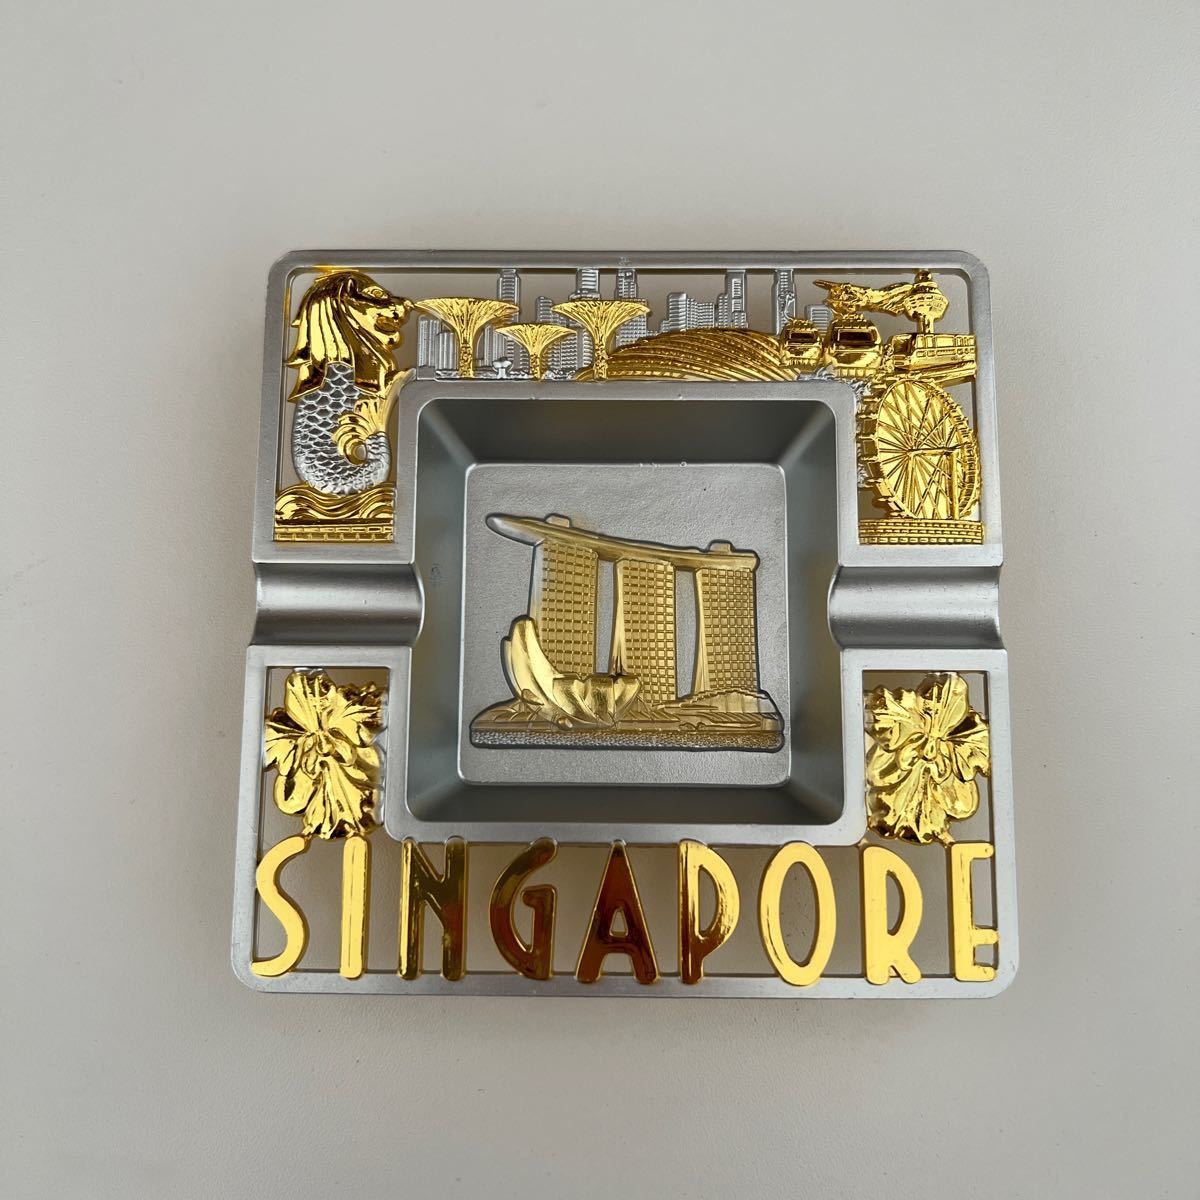 シンガポール 灰皿 - 喫煙具・ライター